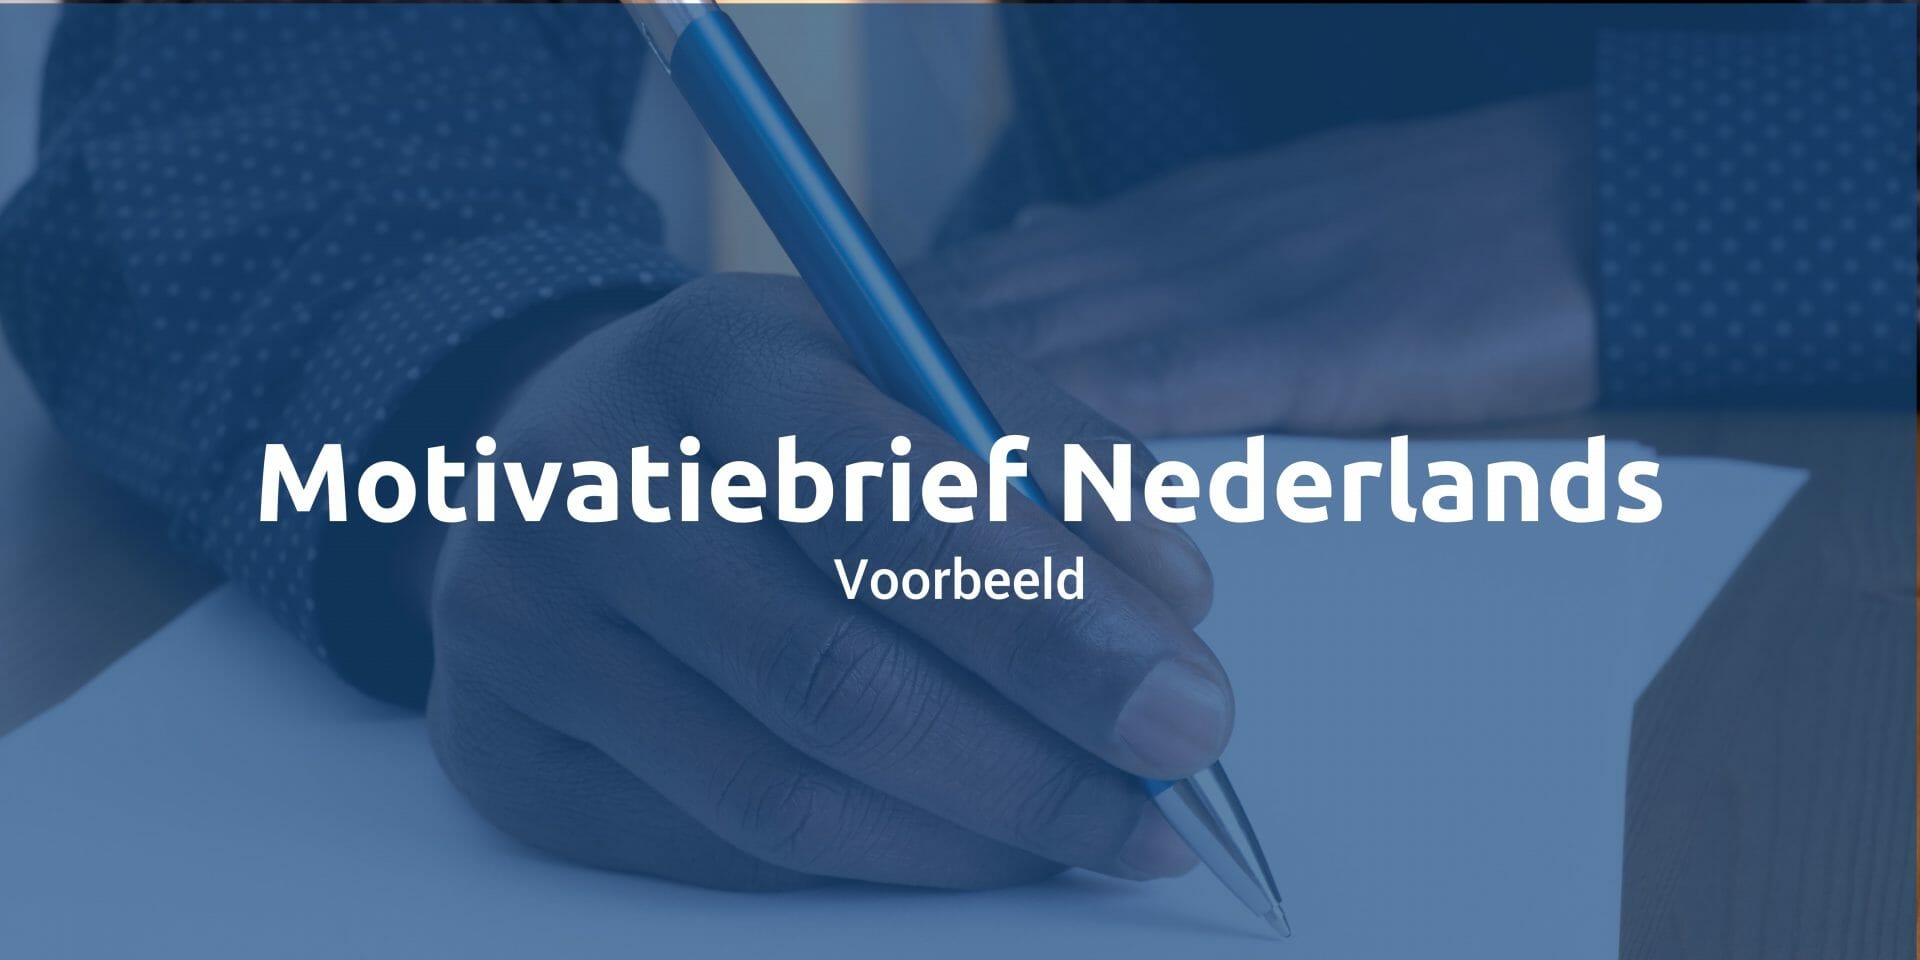 Voorbeeld Nederlandse Motivatiebrief 2022 Download Sollicitatieblog